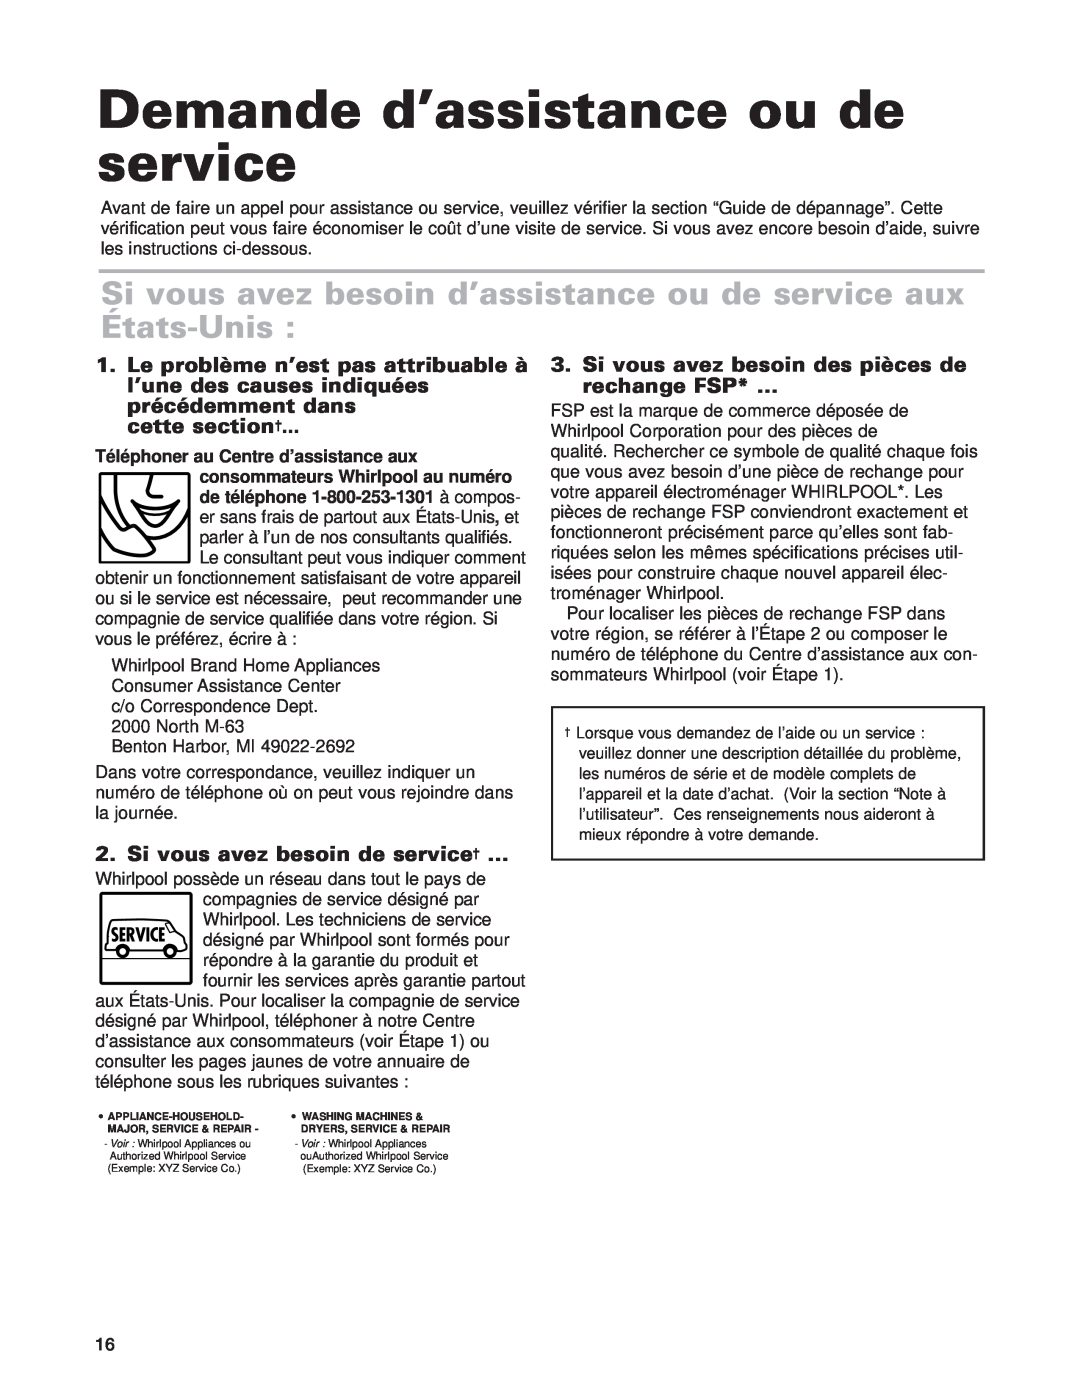 Whirlpool GLT3615G Demande d’assistance ou de service, Si vous avez besoin d’assistance ou de service aux États-Unis 